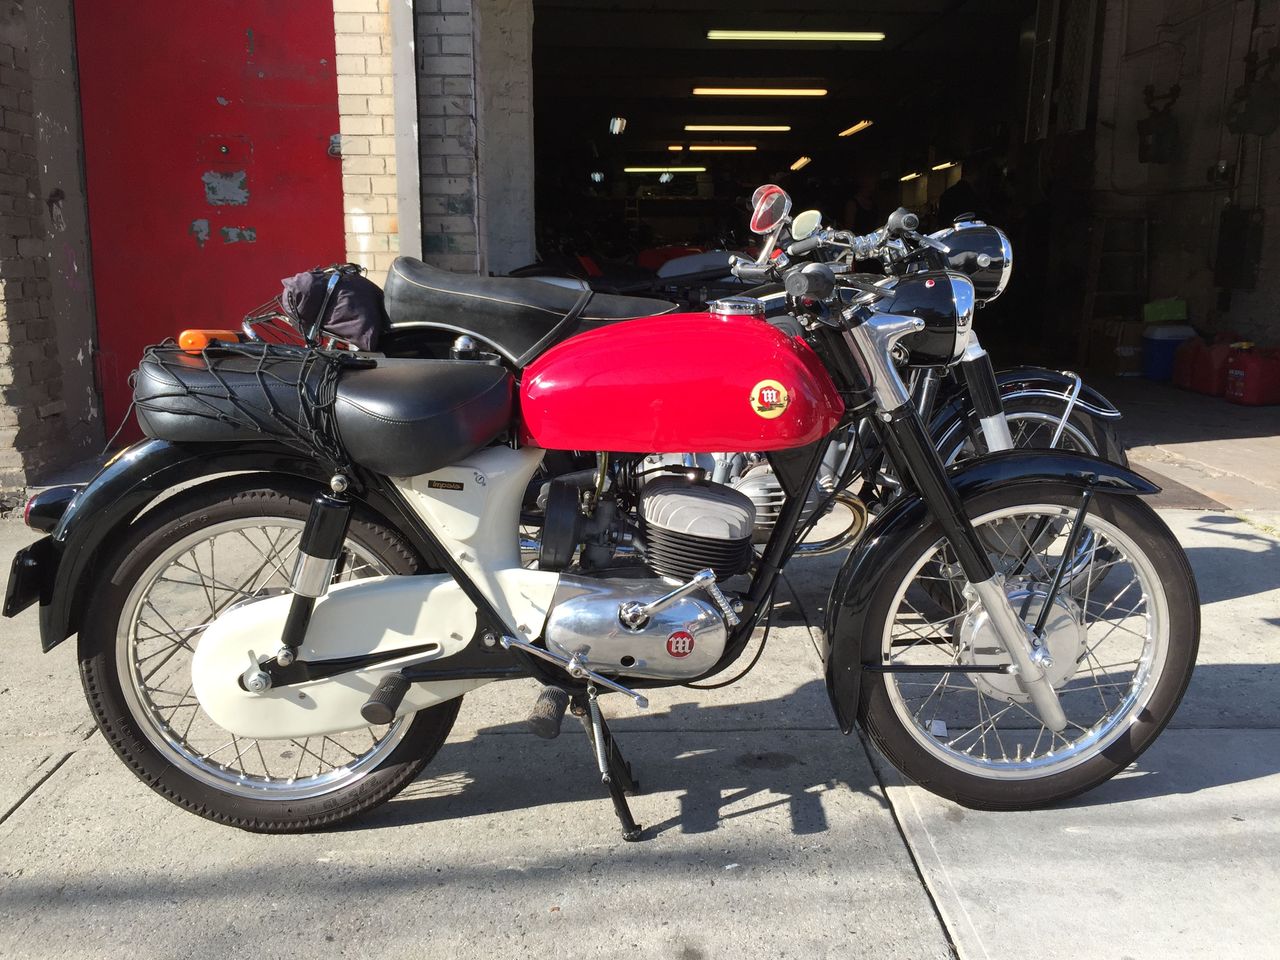 Vintage Montesa motorcycle at Moto Borgotaro